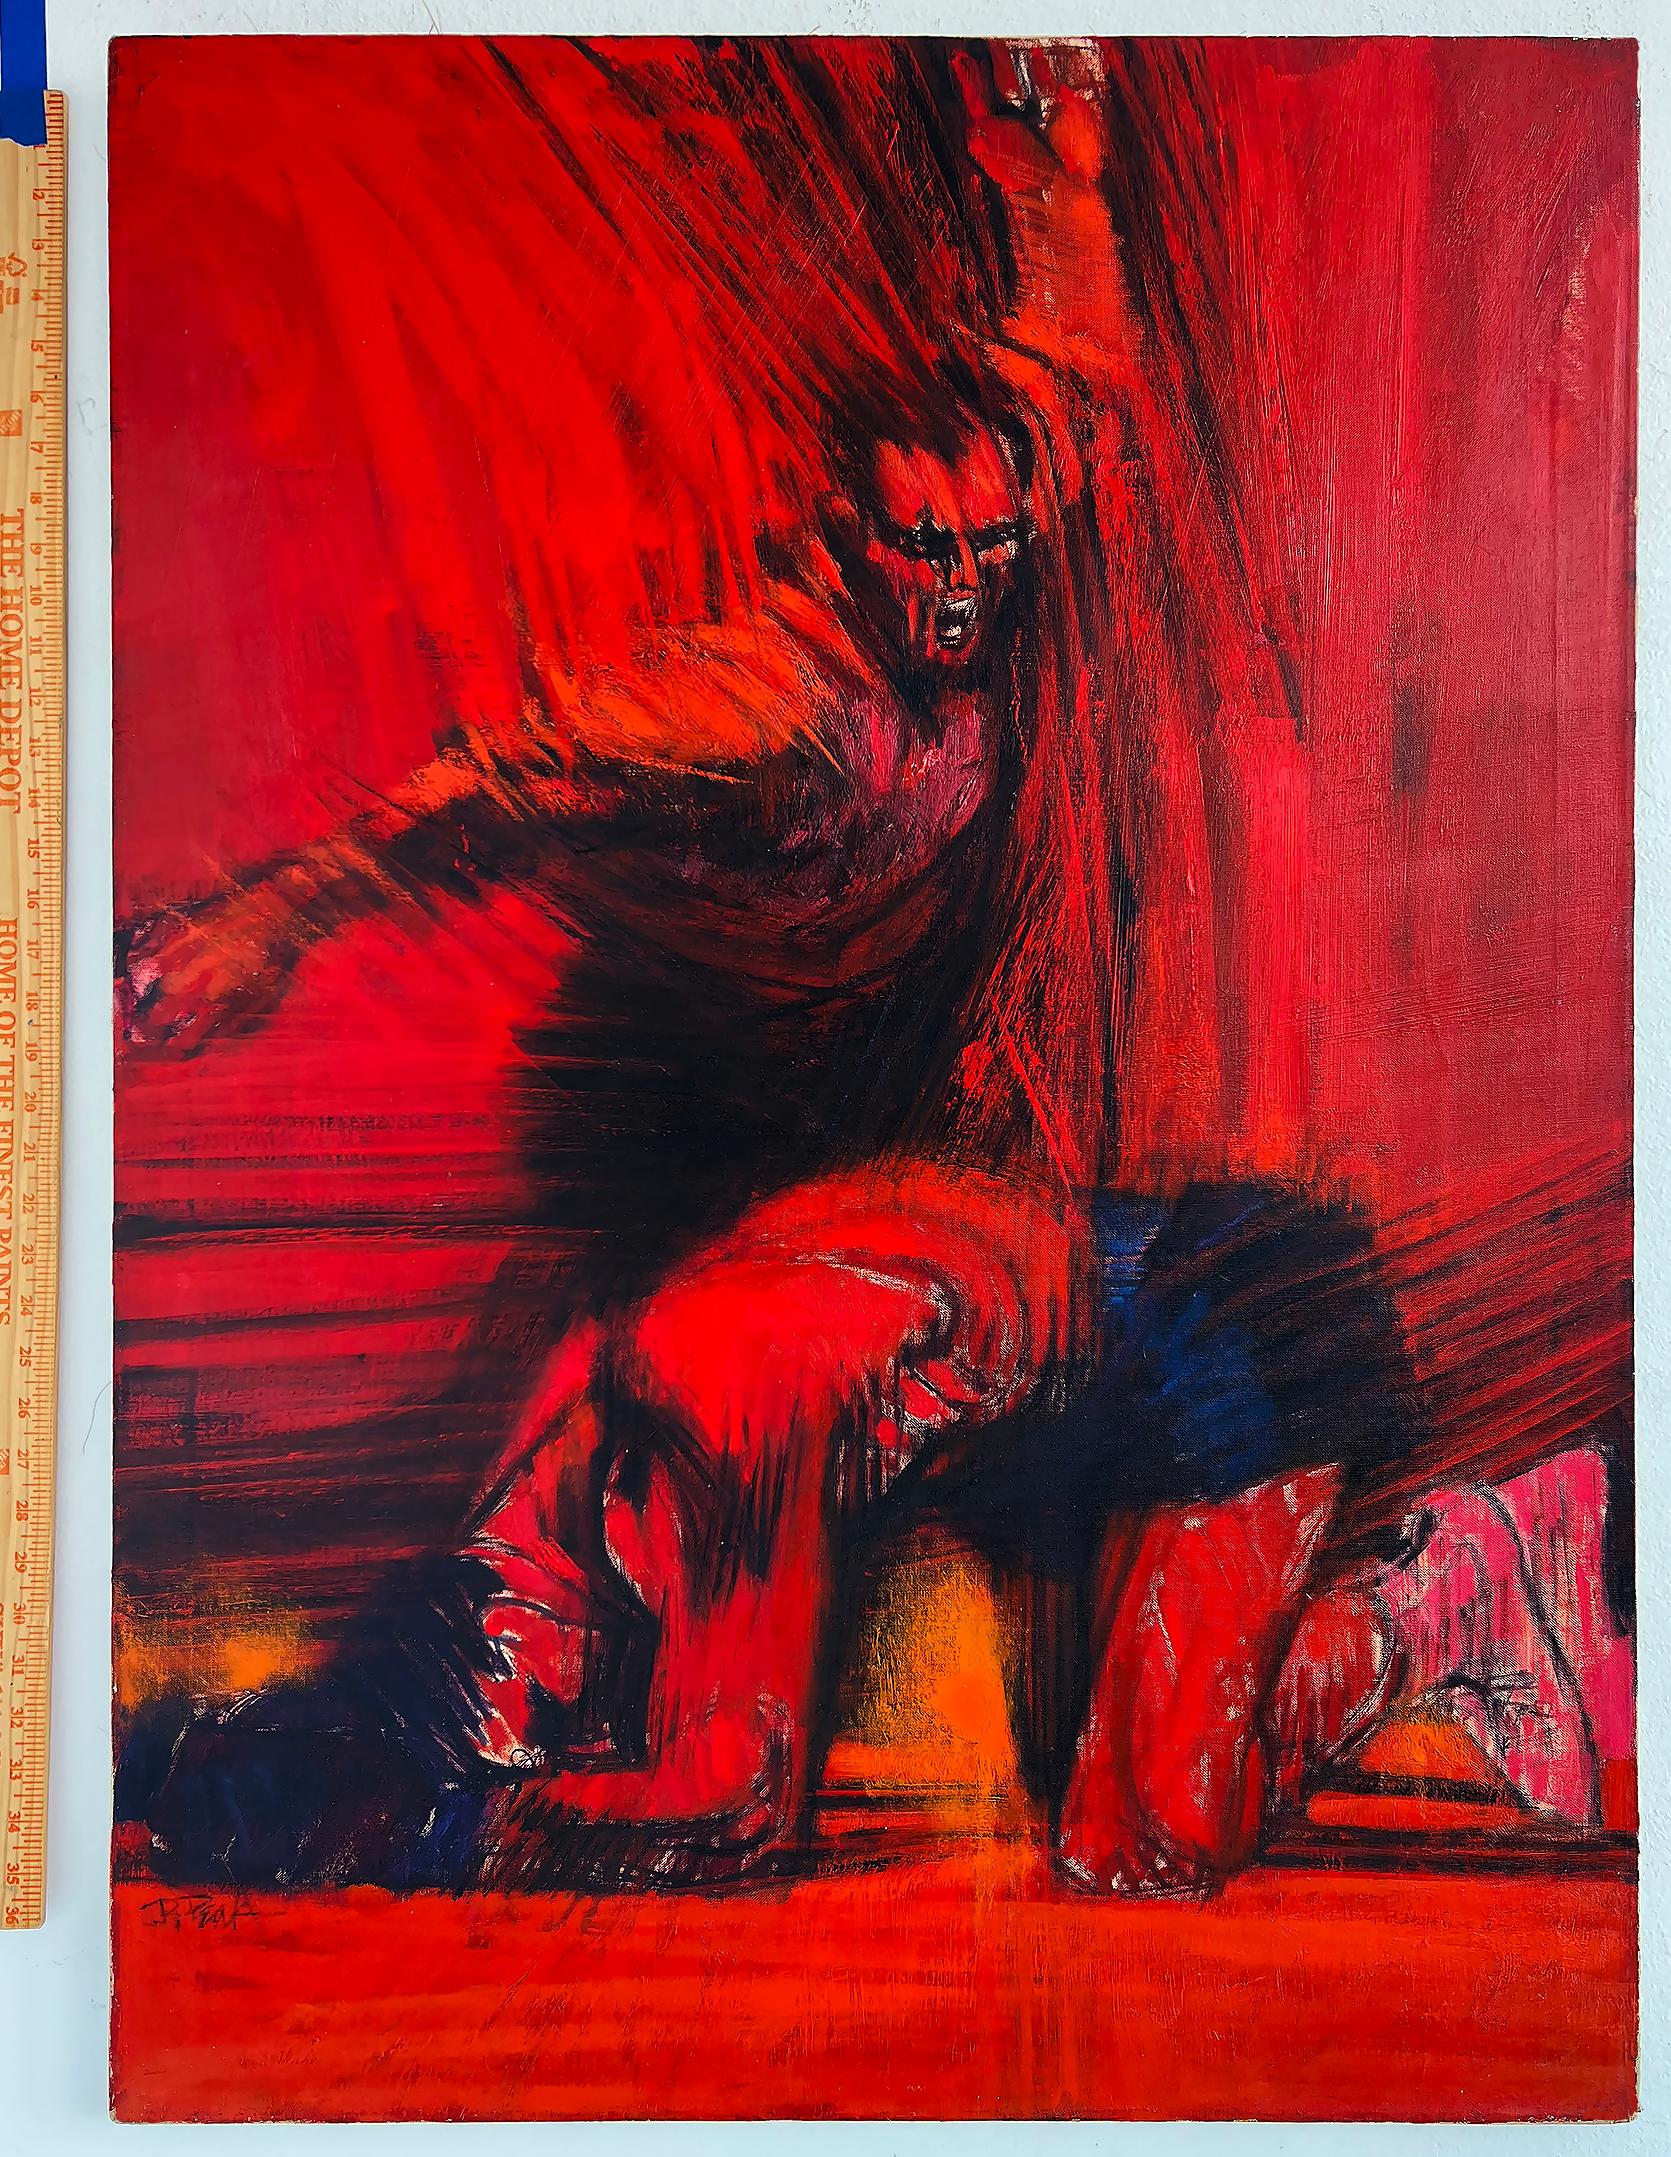 Boxring. Schachtelverpackt, bis zum Boden geknöpft mit 10 Zahlen, rot und schwarz,  Esquire Magazin (Expressionismus), Painting, von Bob Peak